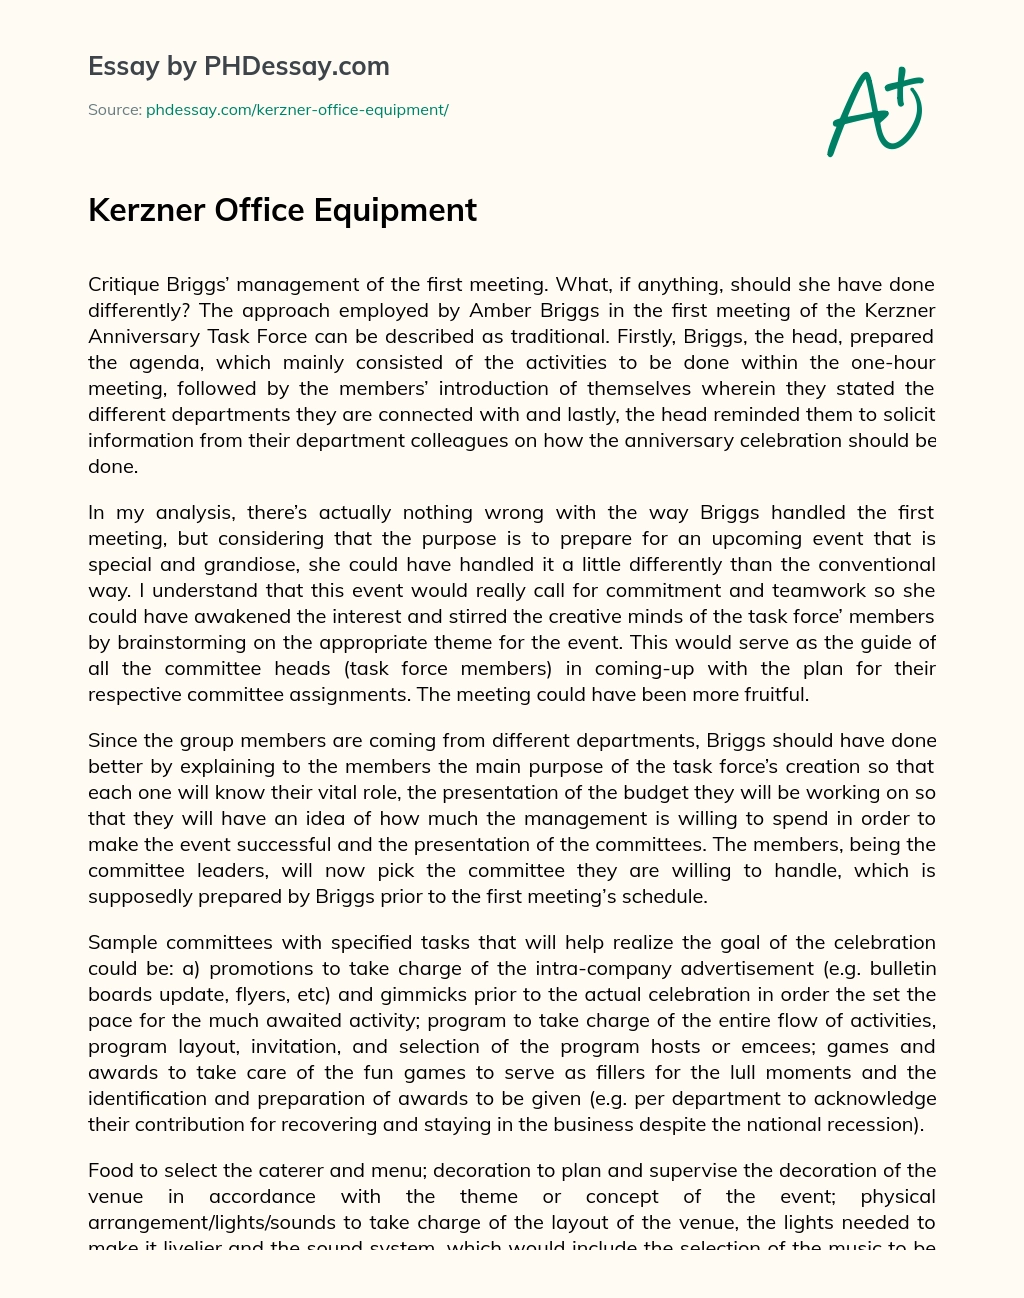 Kerzner Office Equipment essay